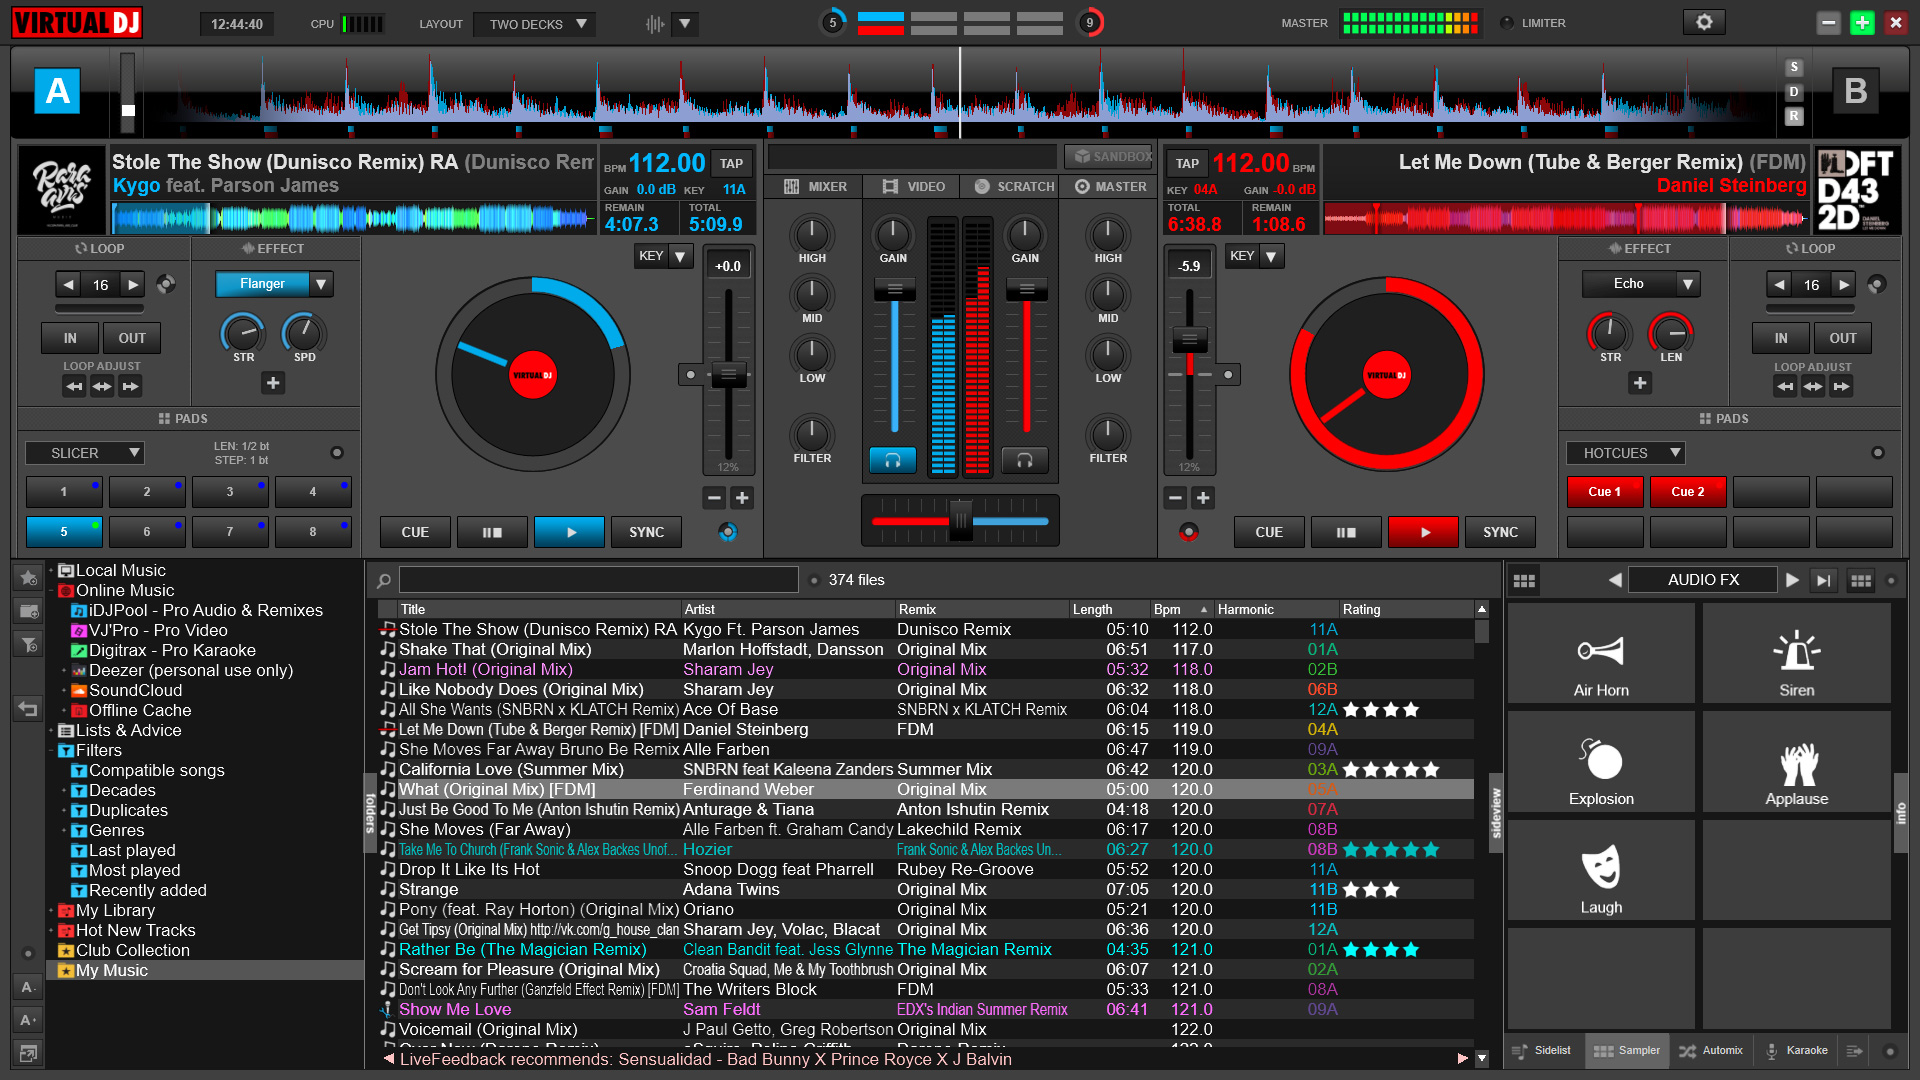 Free Download Virtual DJ v7.0 PRO + Crack - SoftMukut